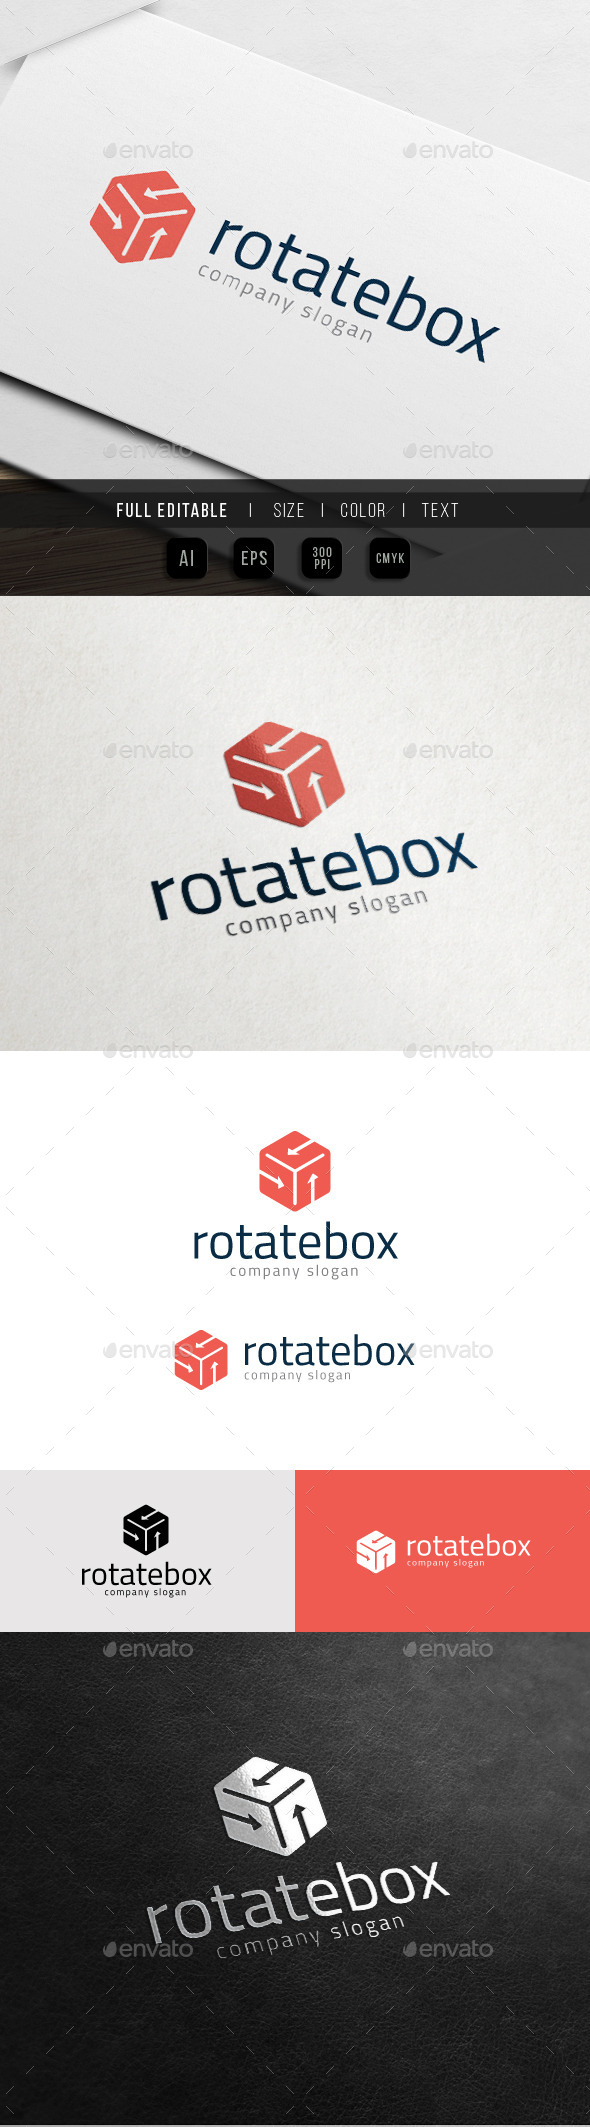 Rotate Box - Hexa Hosting